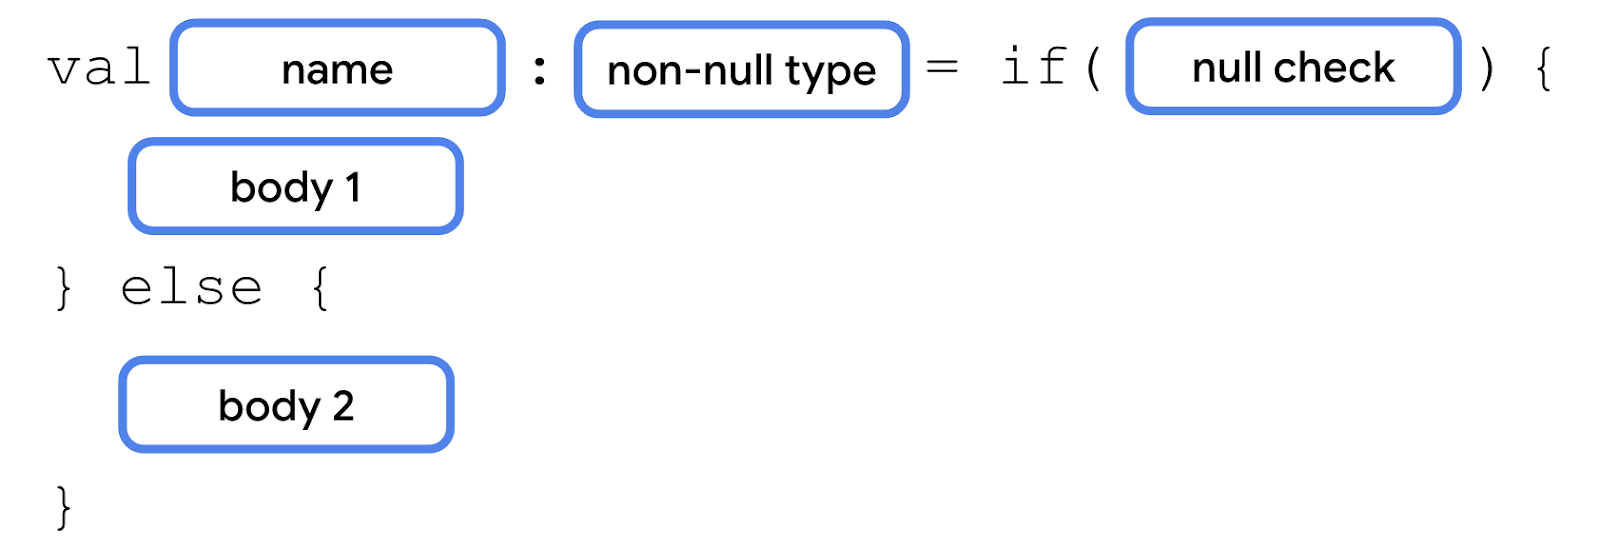 此图描述了 if/else 表达式，其 val 关键字后面依次跟一个“name”块、一个冒号、一个“non-null type”块、一个等号、if 关键字、一对内含条件的圆括号、一对内含“body 1”的大括号、else 关键字，以及另一对内含“body 2”块的大括号。